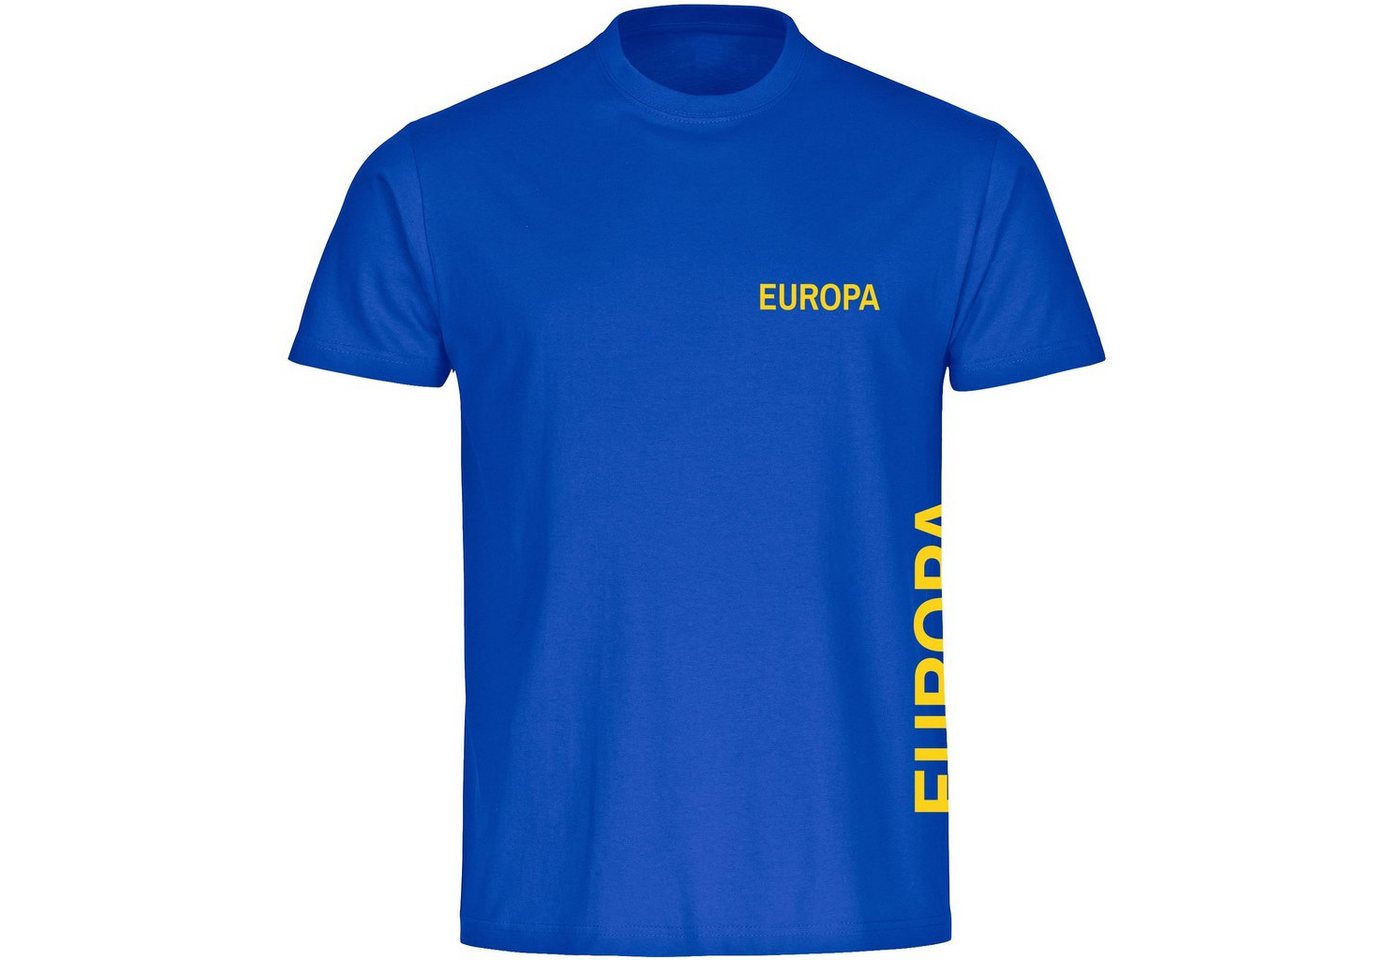 multifanshop T-Shirt Kinder Europa - Brust & Seite - Boy Girl von multifanshop